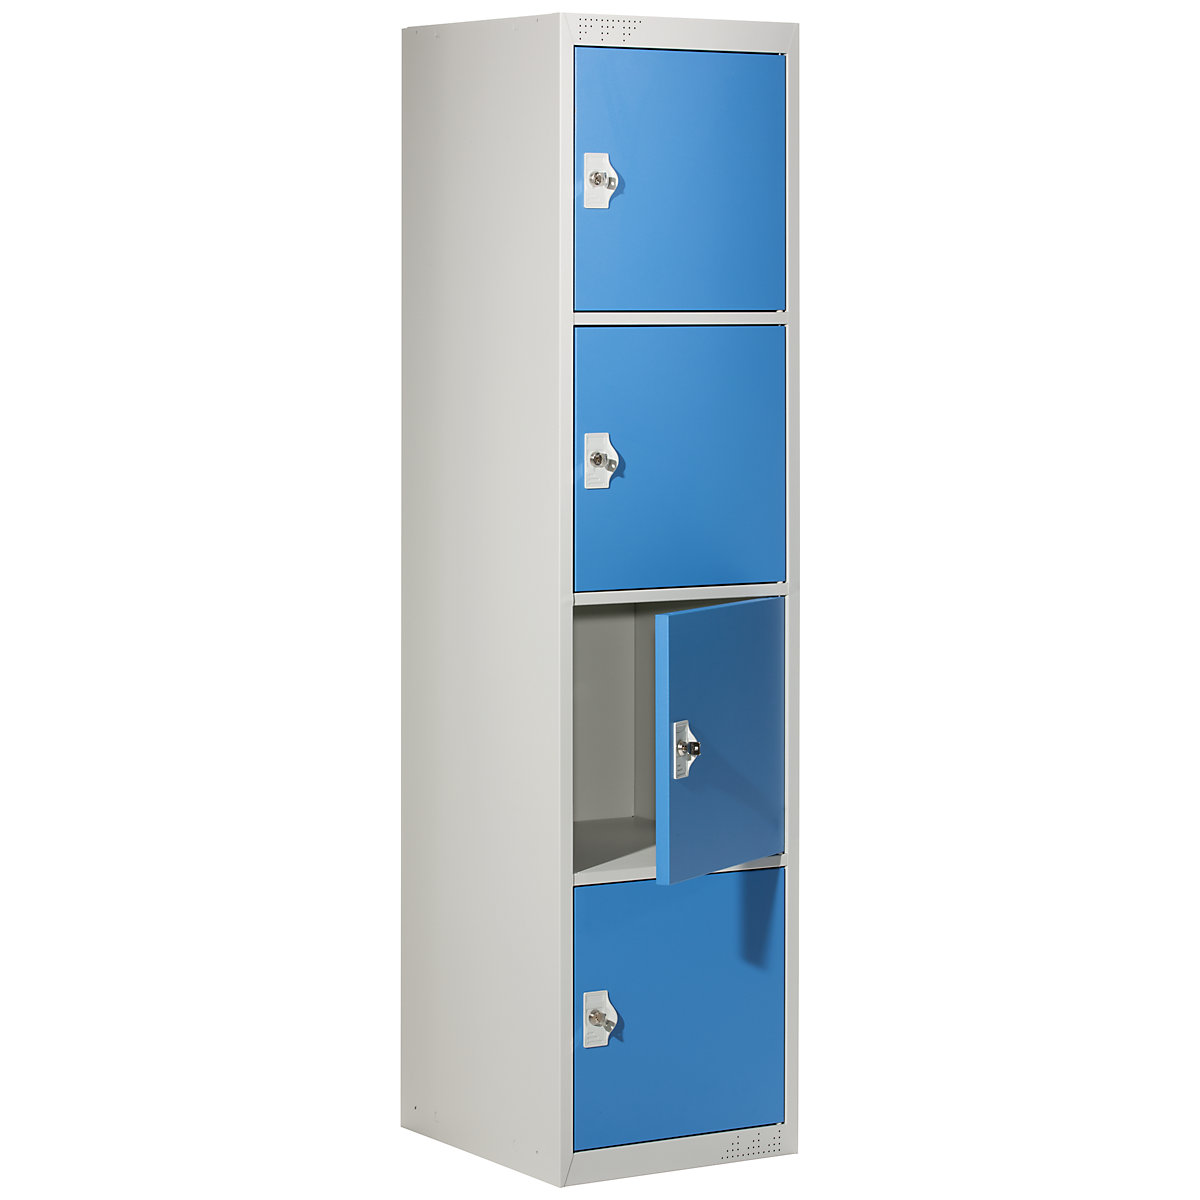 Vestiaire multicases avec 4 casiers verrouillables, h x l x p 1800 x 450 x 500 mm, gris clair / bleu clair, élément de base